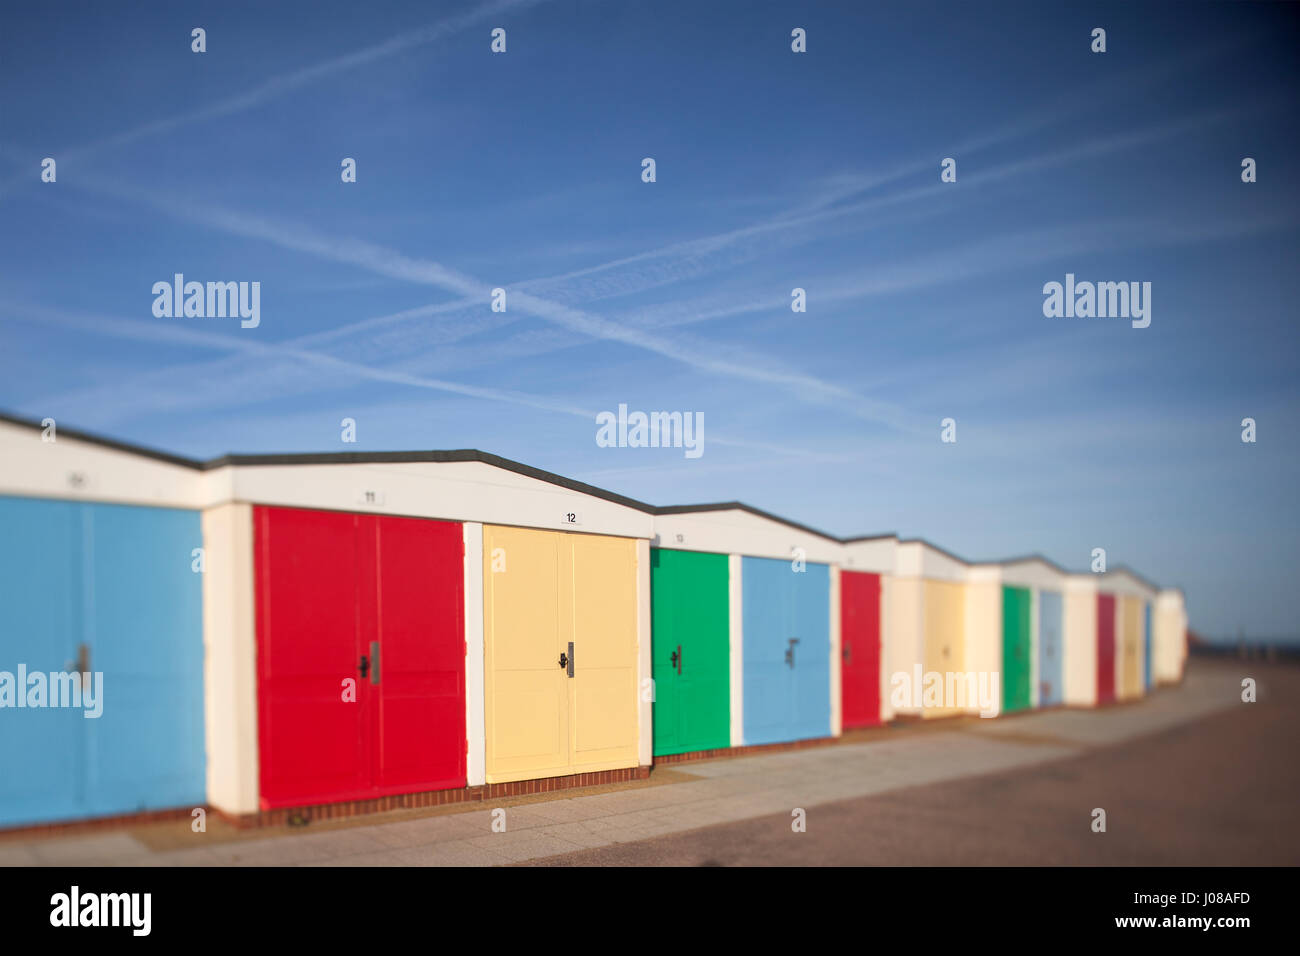 Eine Reihe von bunten Strandhäuschen am Strand von Exmouth, Devon, UK auf Tilt-Shift-Objektiv mit selektiven Fokus erschossen Stockfoto